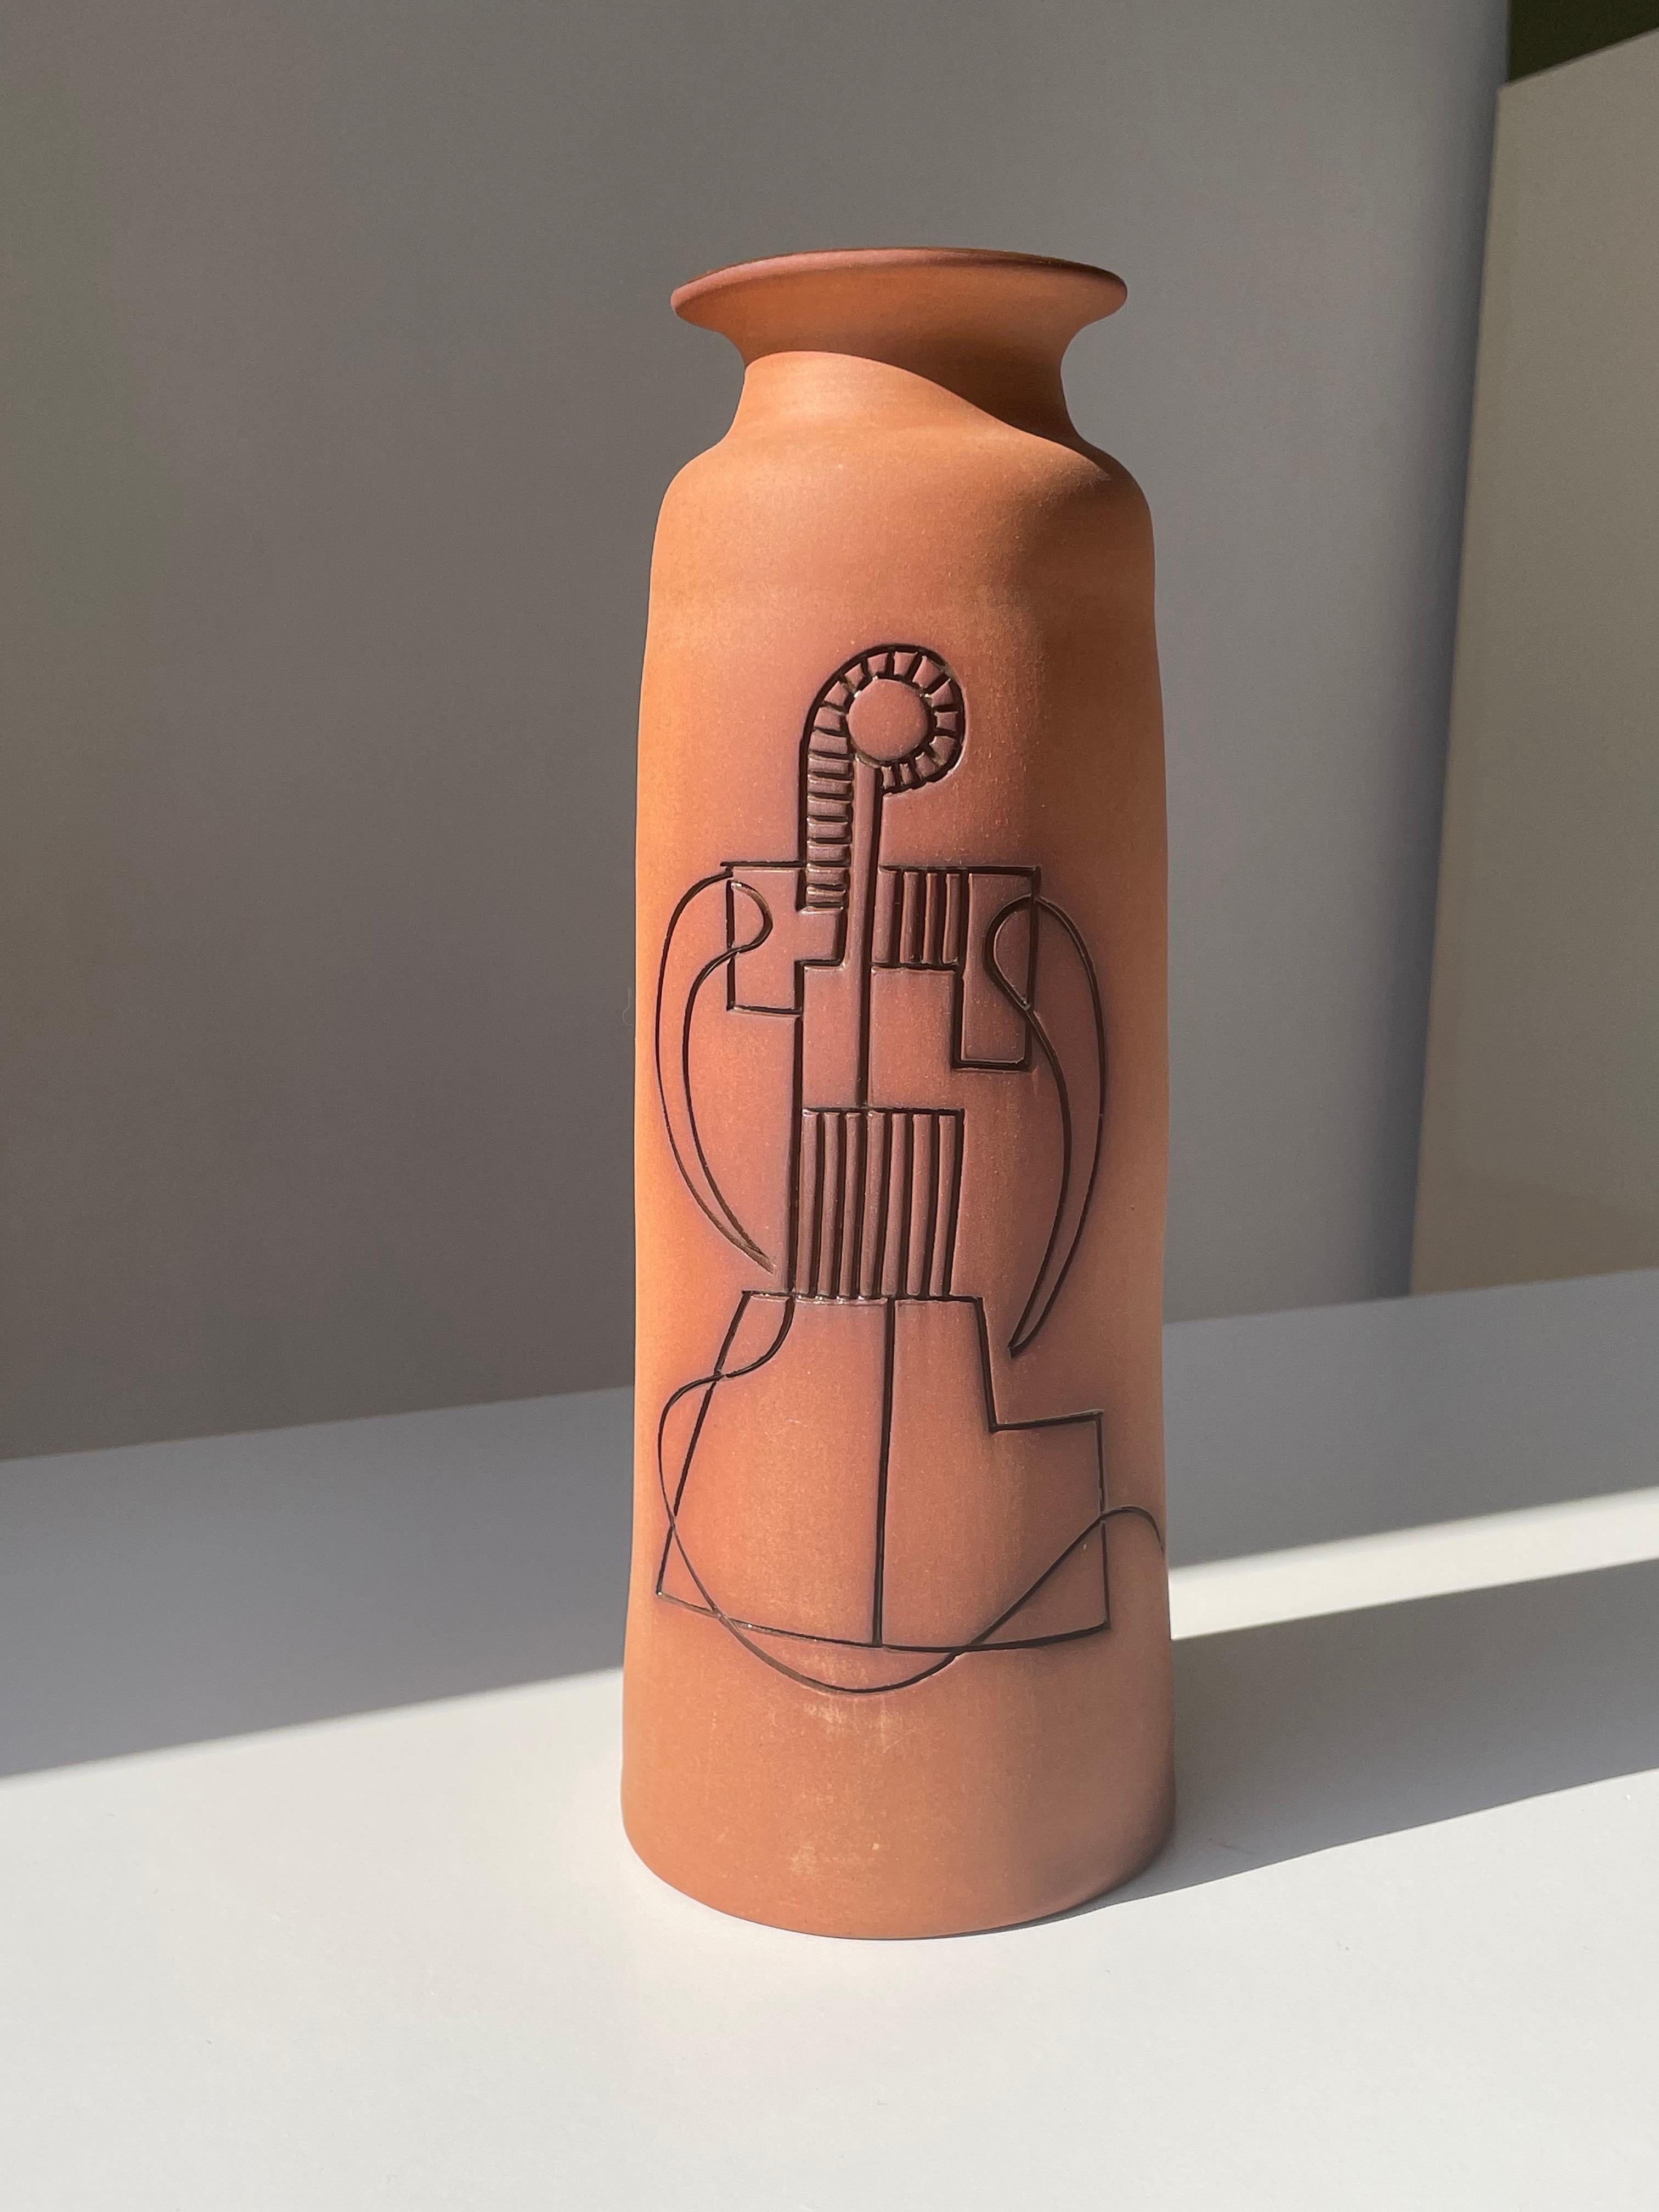 Grand vase contemporain minimaliste en céramique fabriqué à la main à Chypre. Extérieur non émaillé avec un décor organique stylisé incisé en relief et sculpté à la main, avec une glaçure brun caramel dans chaque ligne graphique. L'intérieur est